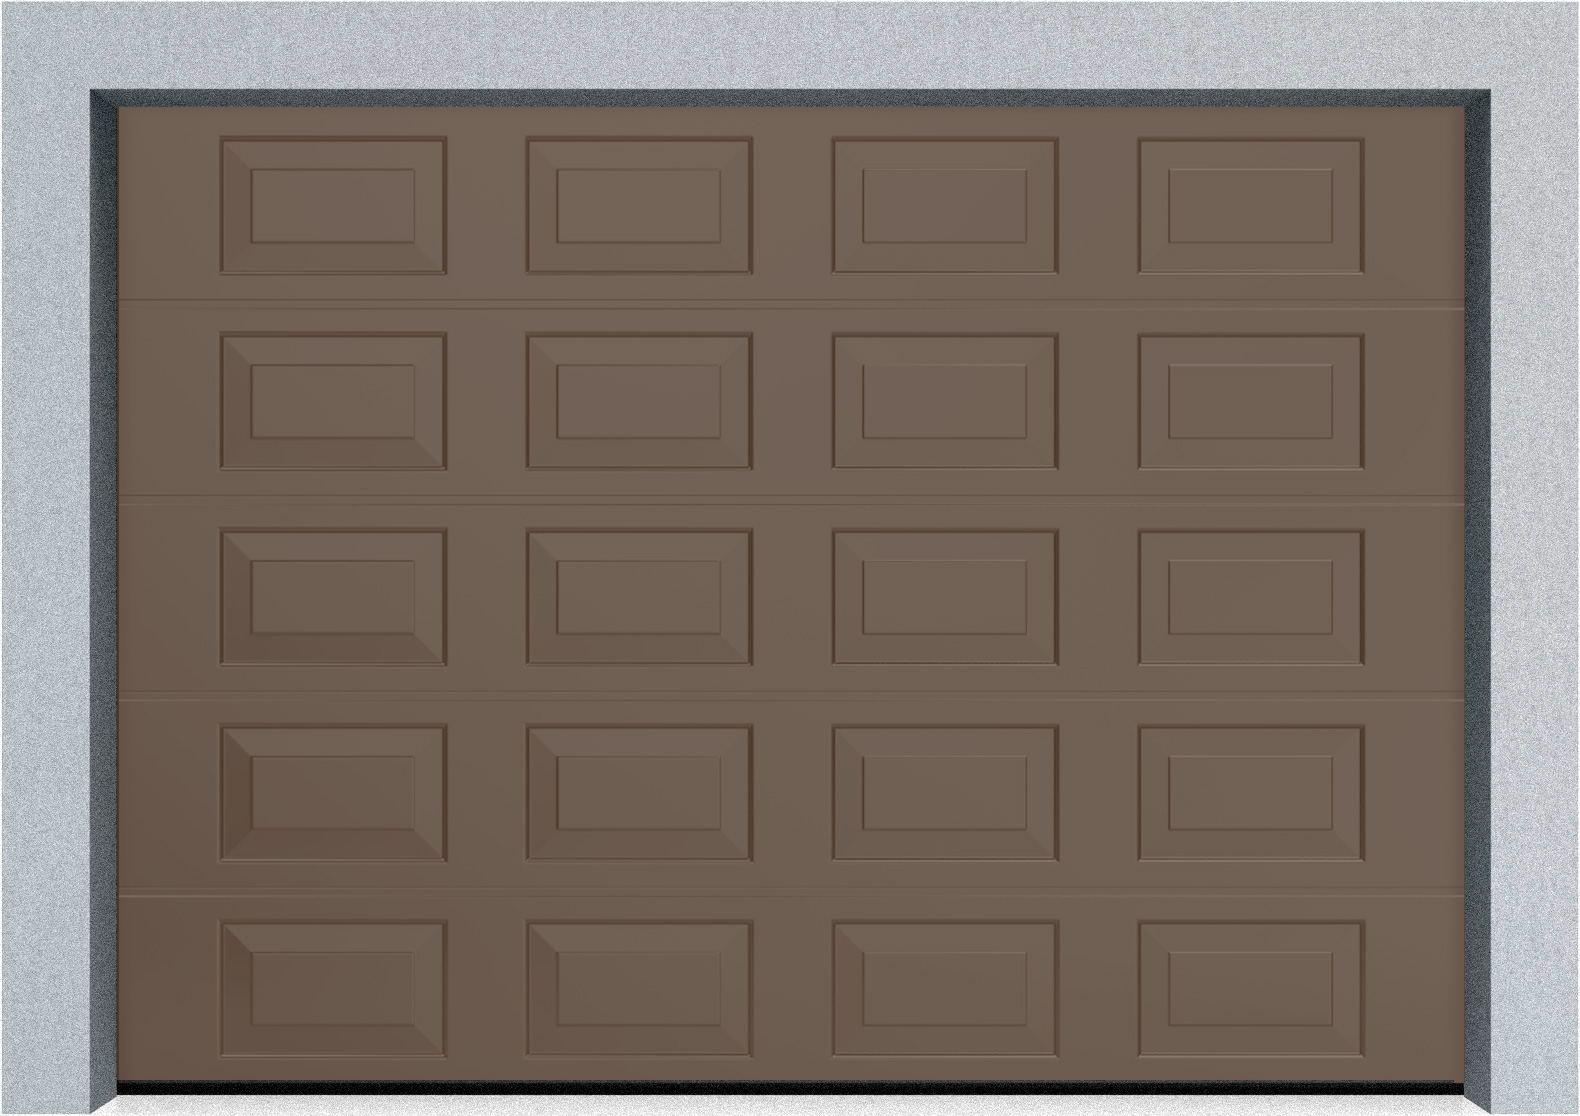  Секционные гаражные ворота DoorHan RSD01 2400x2200 Филенка стандартные цвета, пружины растяжения, фото 2 